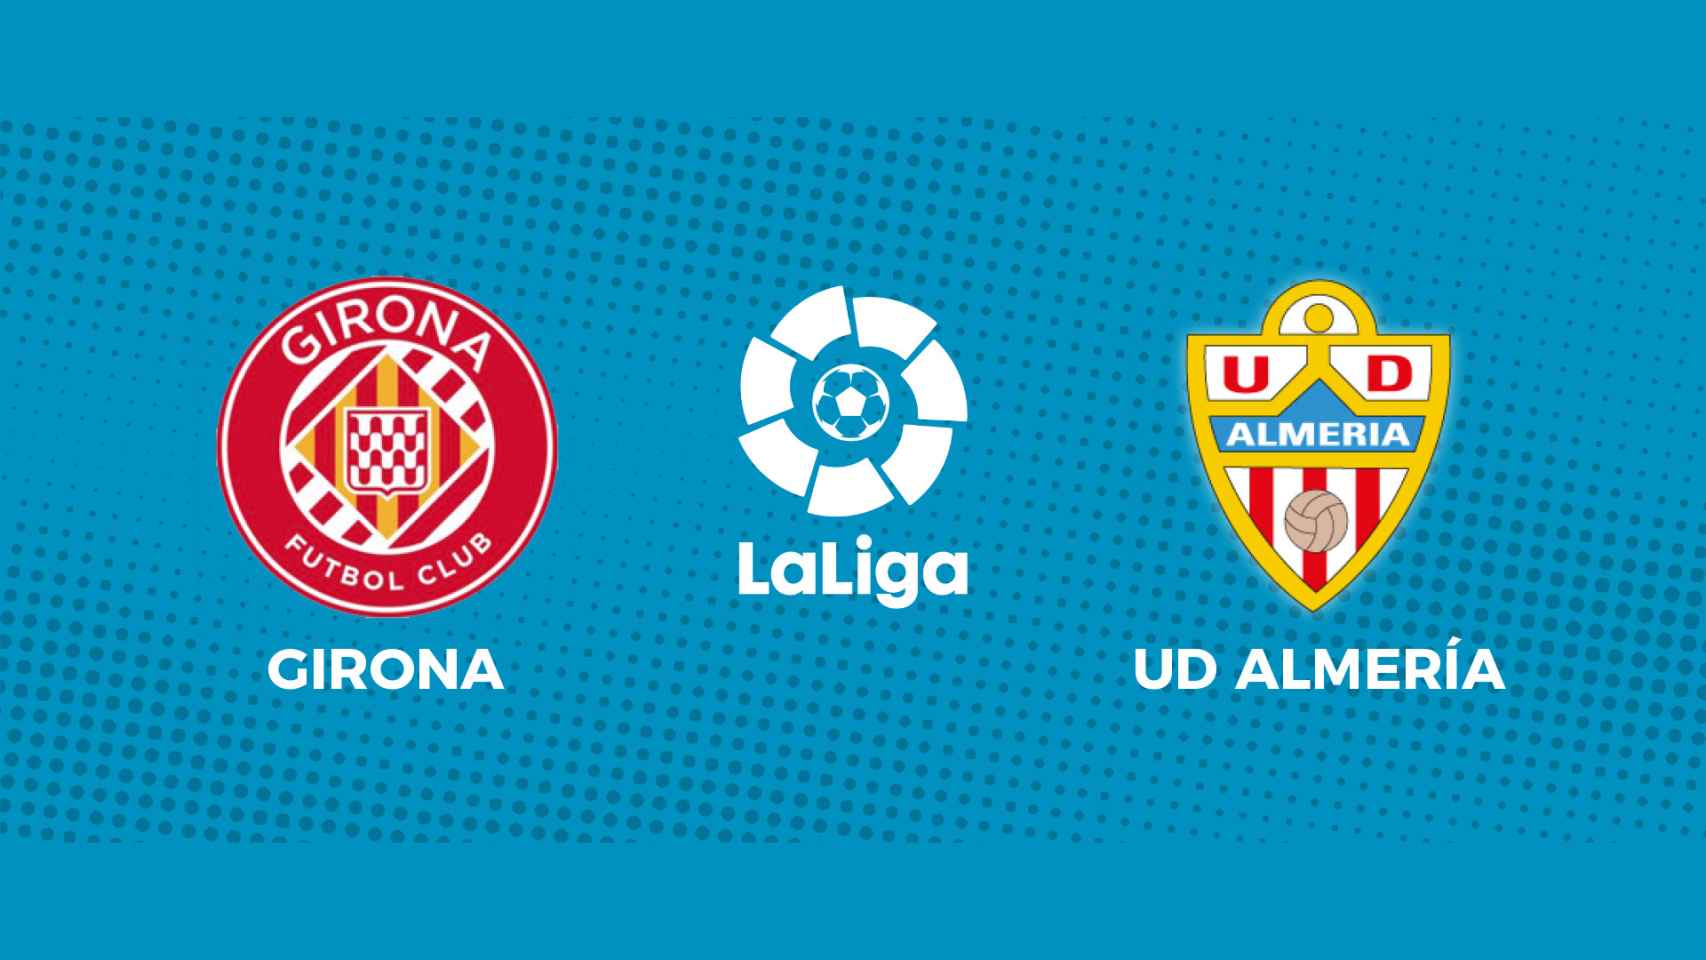 Girona - Almería, La Liga en directo